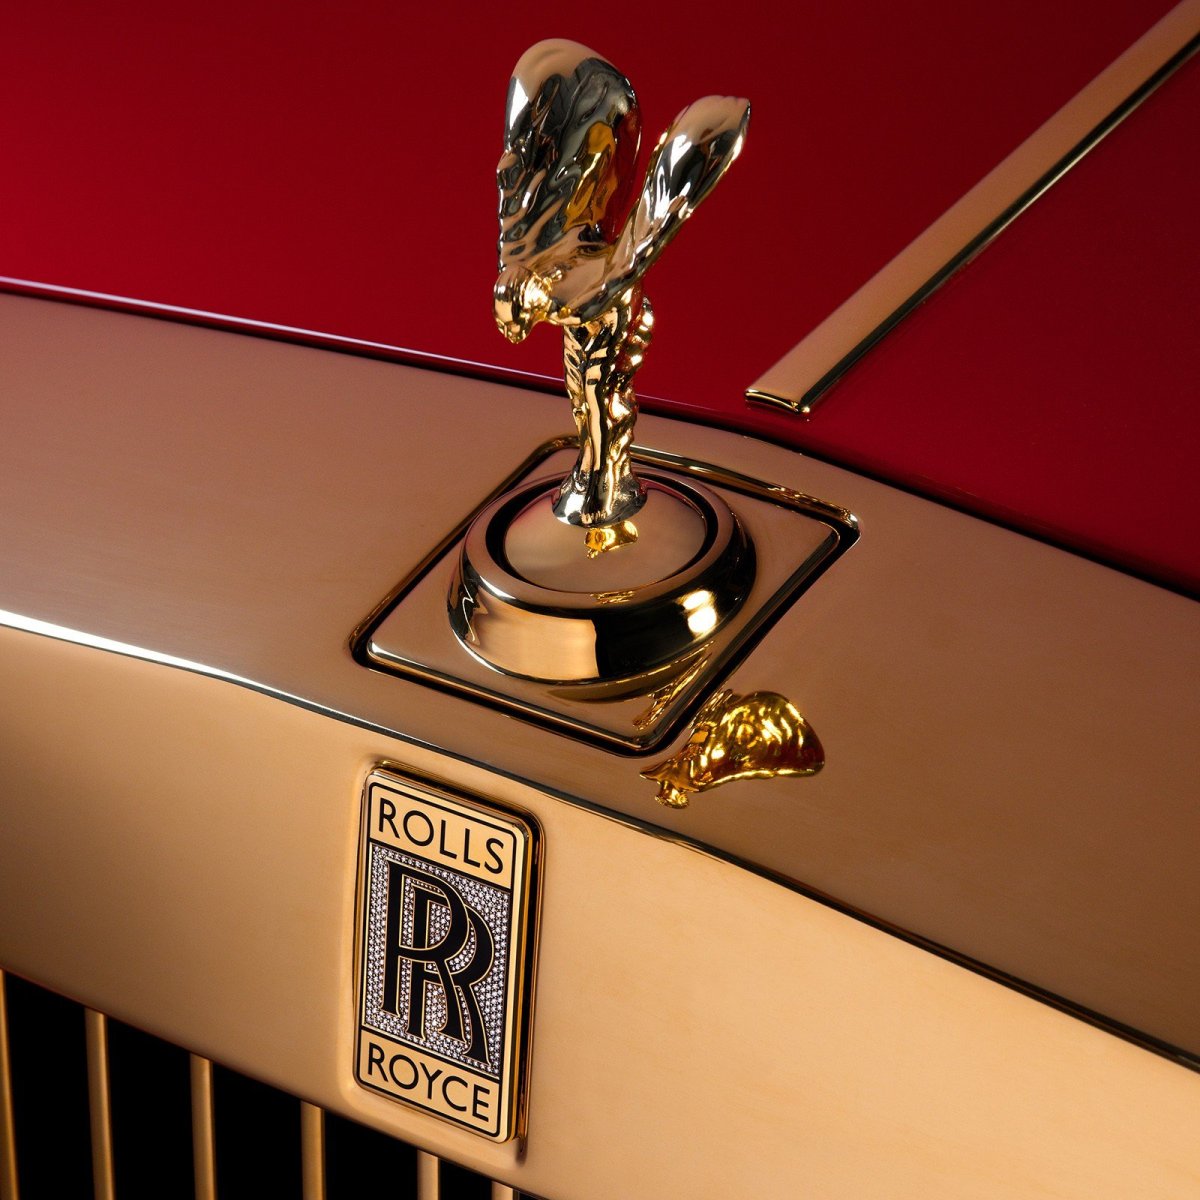 Rolls Royce Phantom в золоте